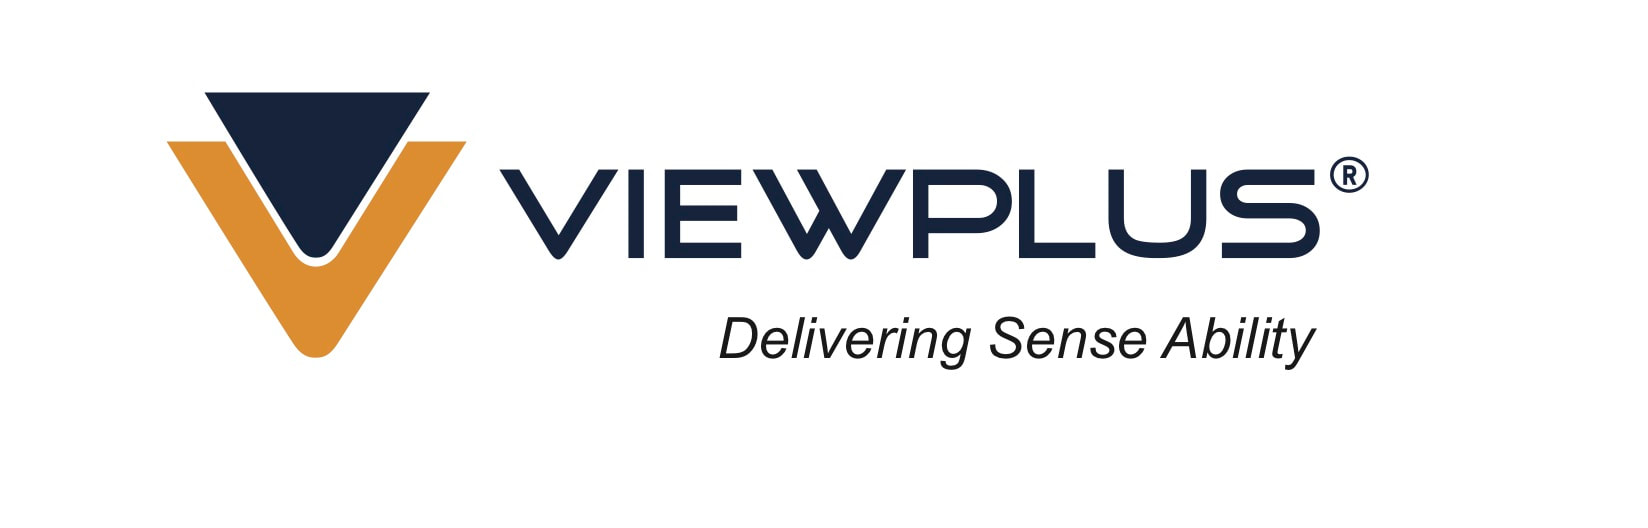 ViewPlus Delivering Sense Ability